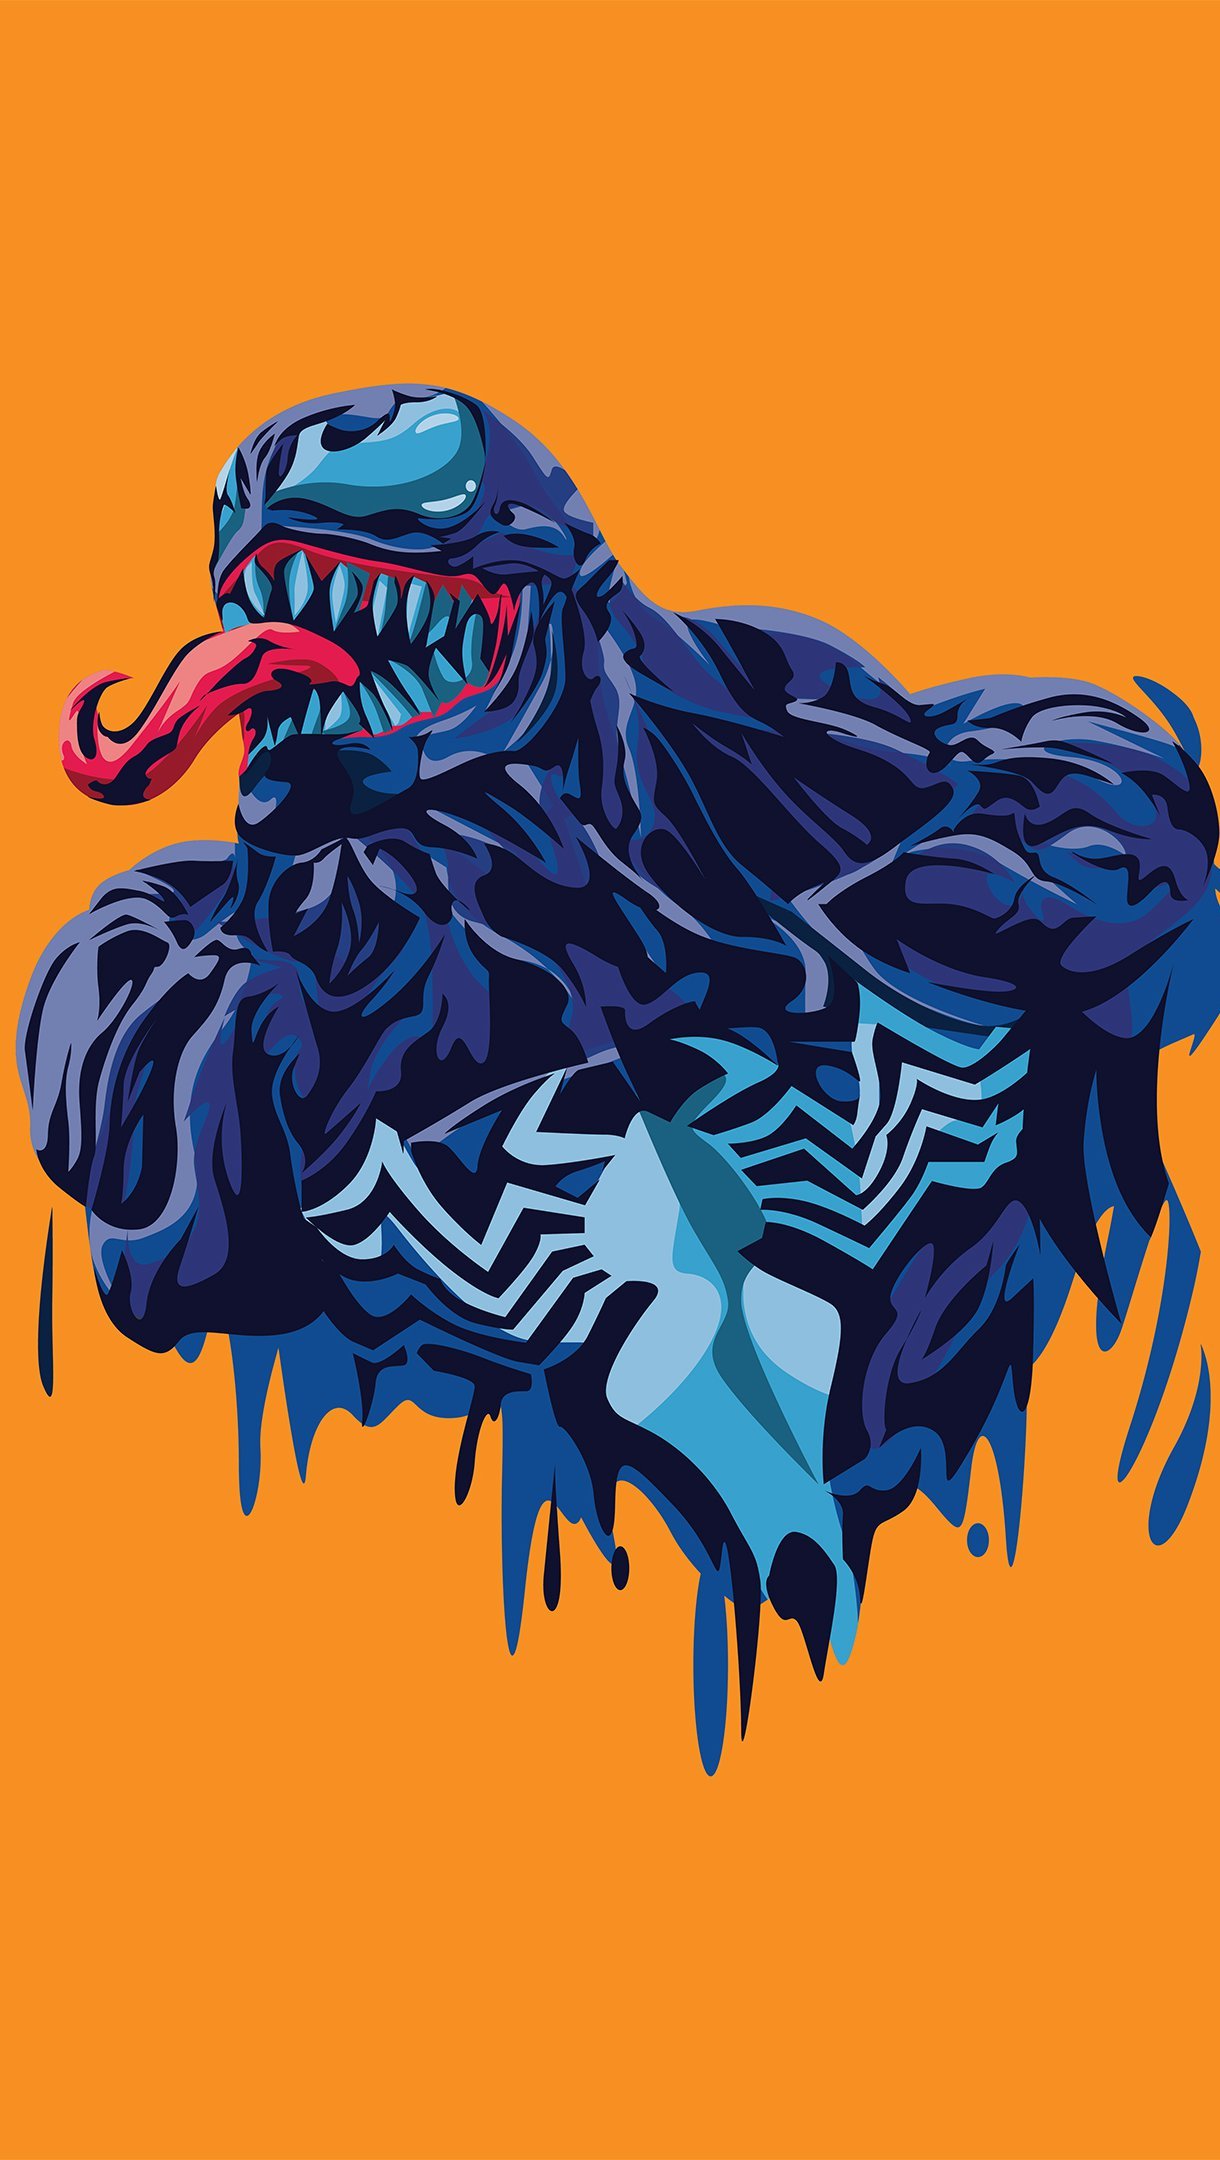 Wallpaper Venom Minimalist Illustration Vertical